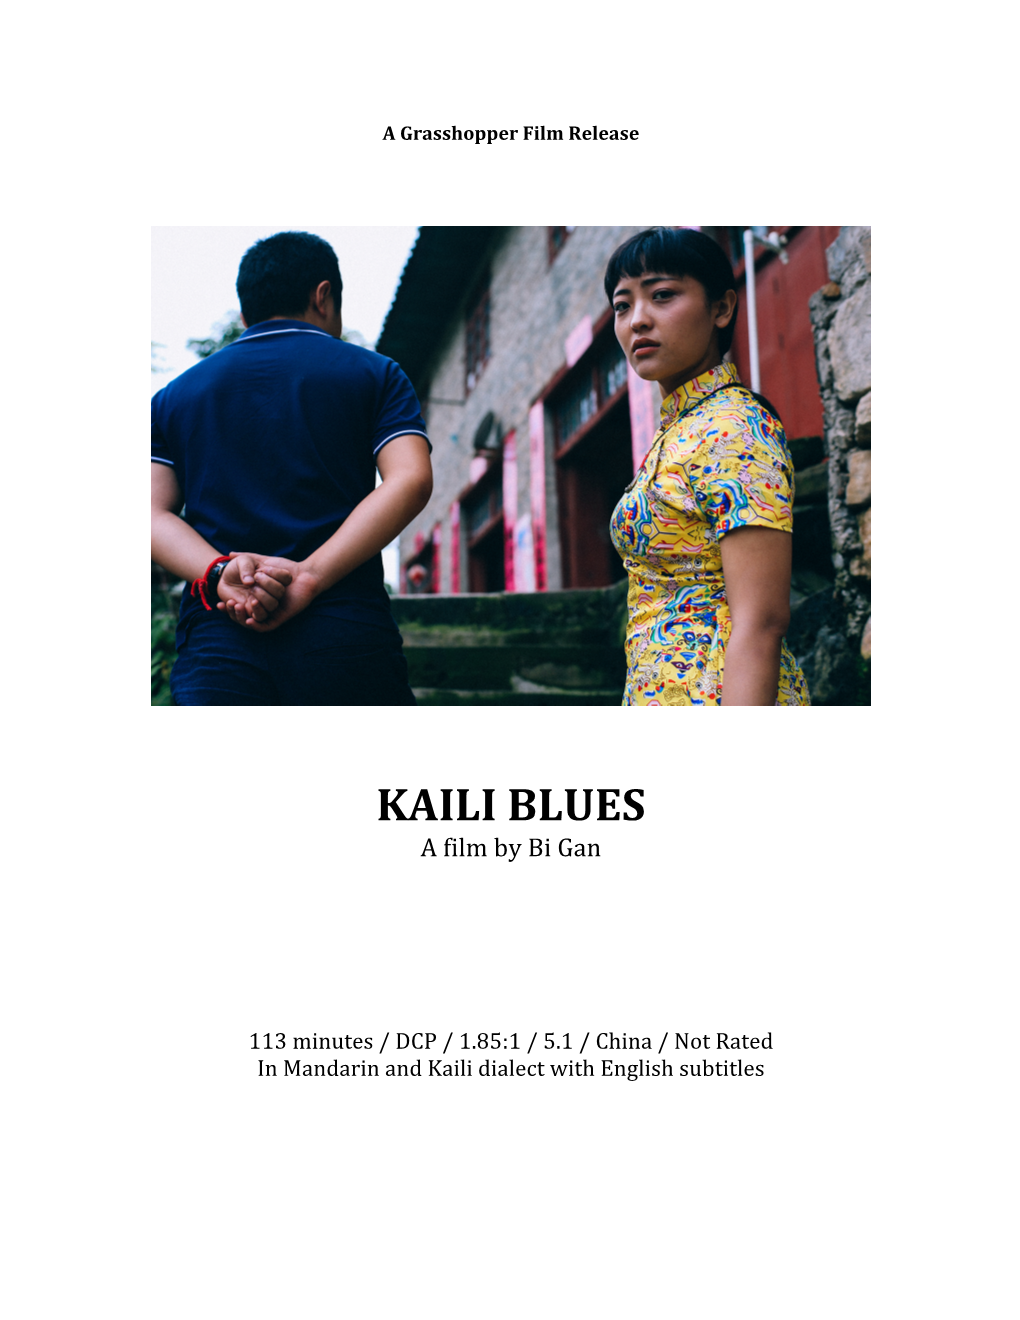 KAILI BLUES a Film by Bi Gan